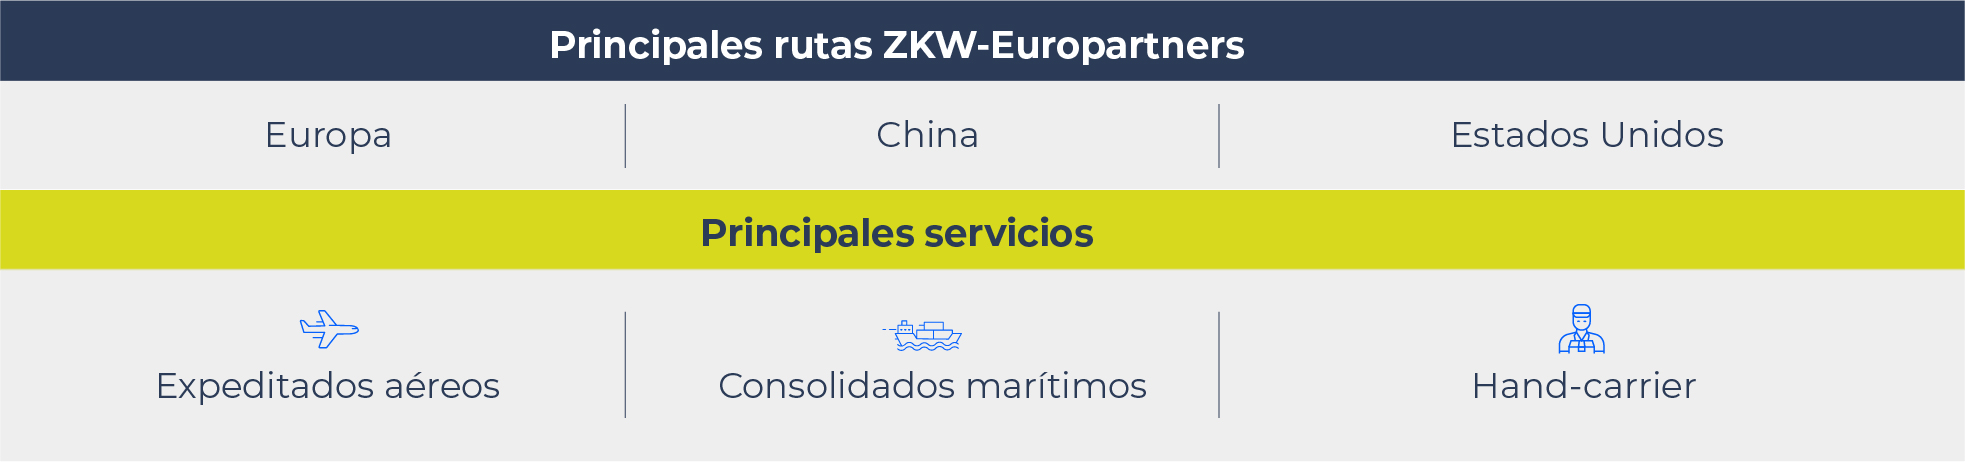 en una tabla están las principales rutas en las cuales Europartners actúa como transportista de carga para ZKW: Europa, China, Estados Unidos y los principales servicios que ofrece: expeditados aéreos, consolidados marítimos y hand carrier.